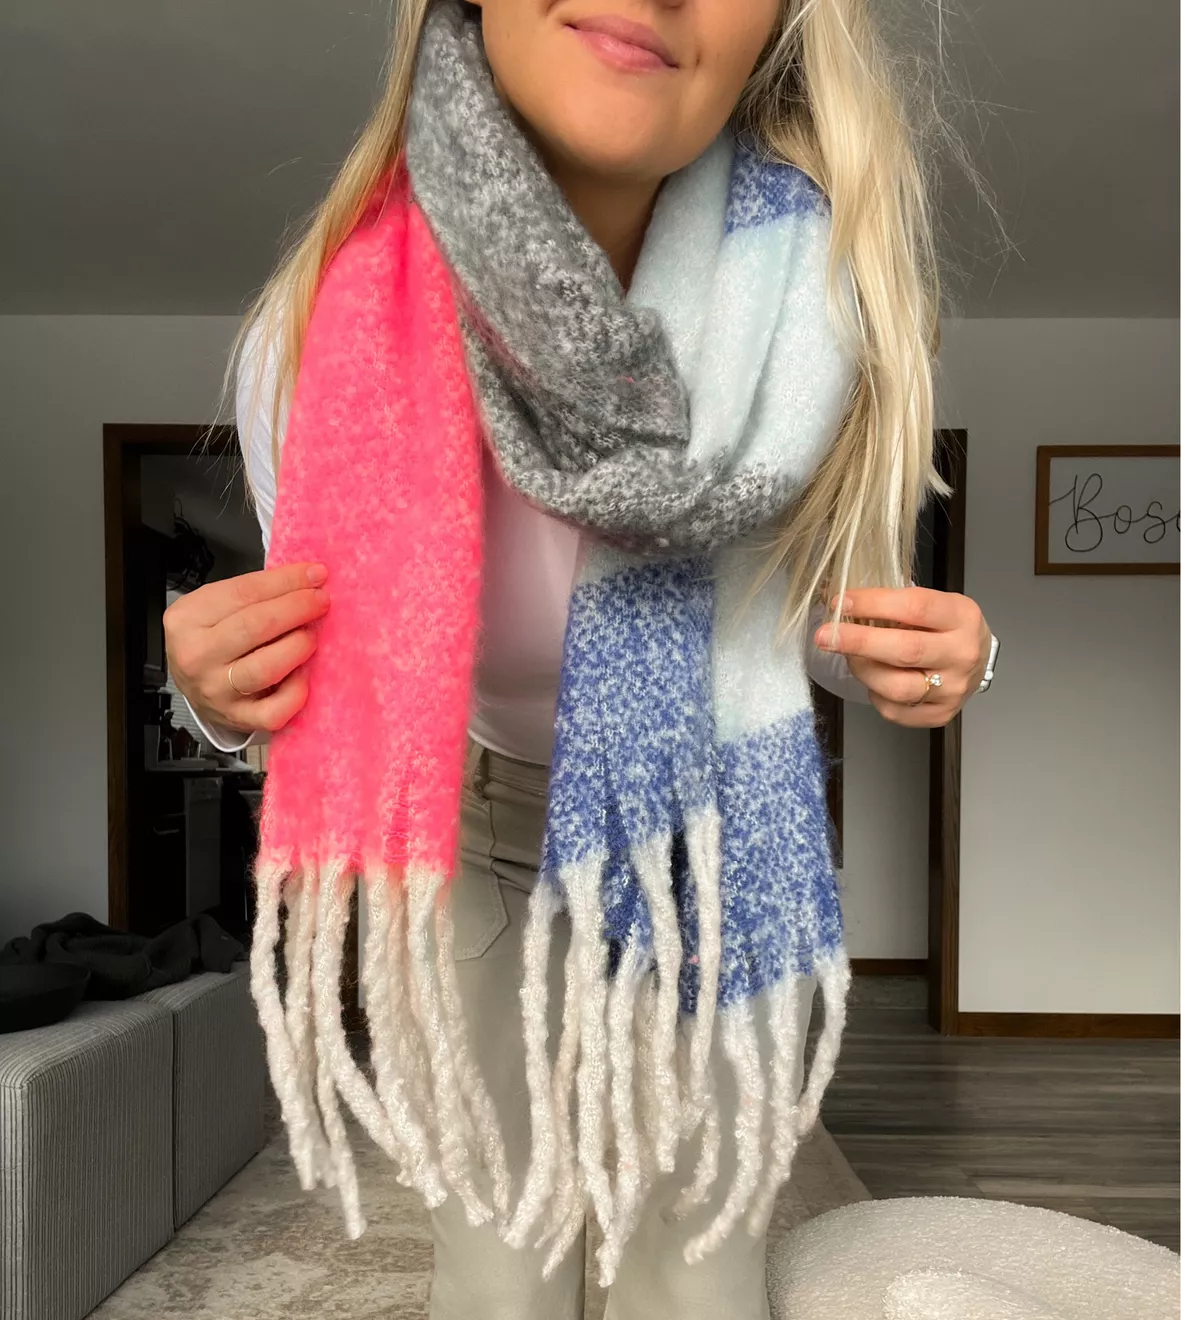 Wander Agio Womens Warm Long Shawl Winter Wrap Large Knit Scarf - New